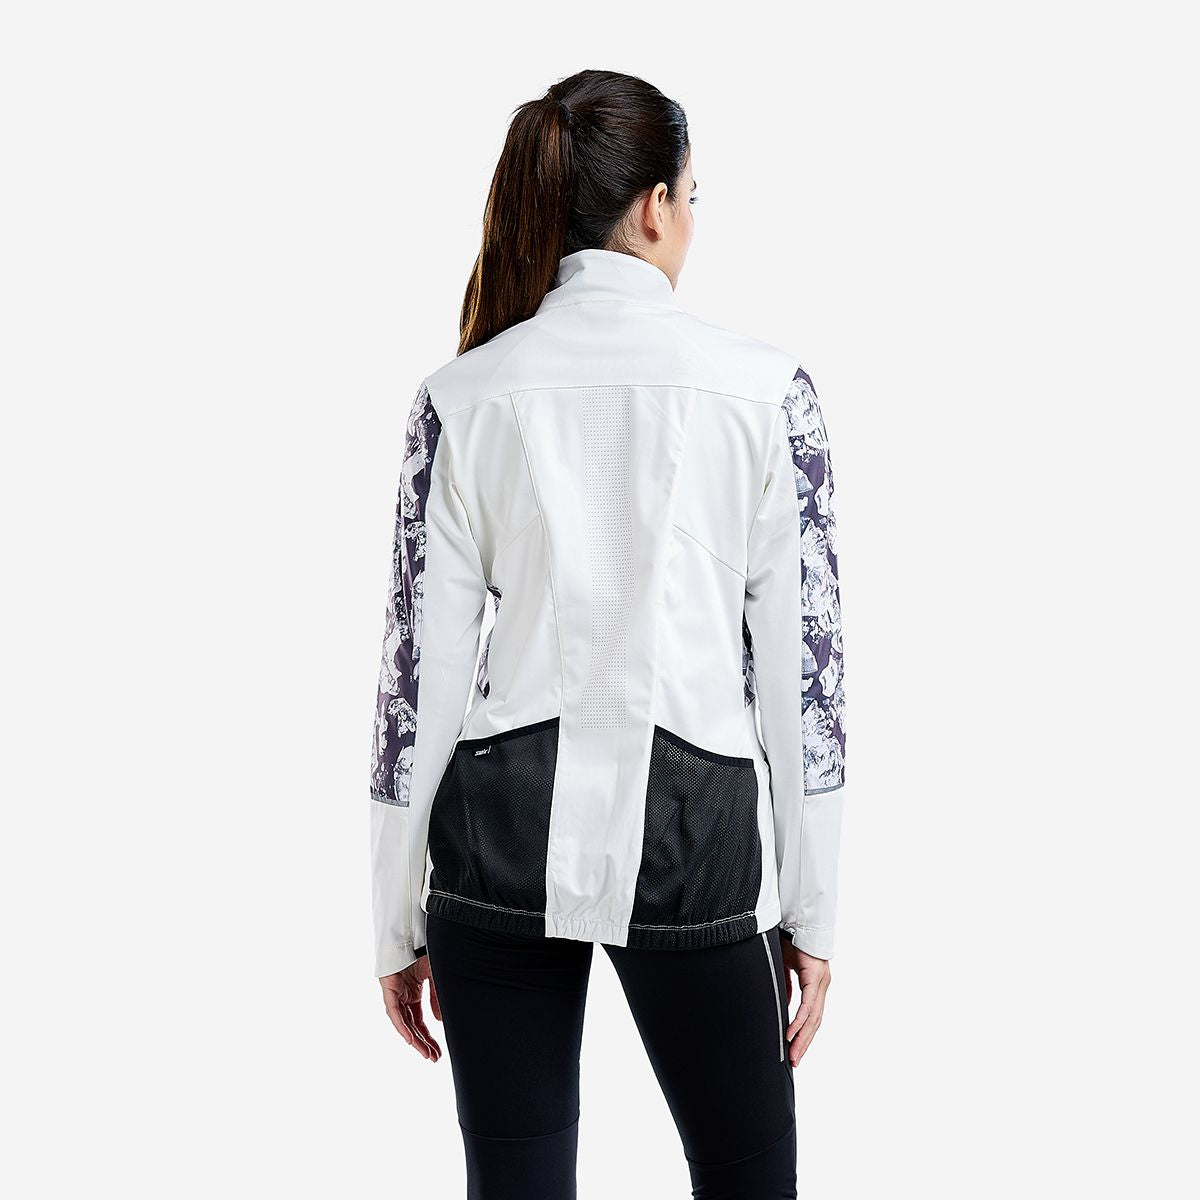 Tista - Women's Interlock Jacket